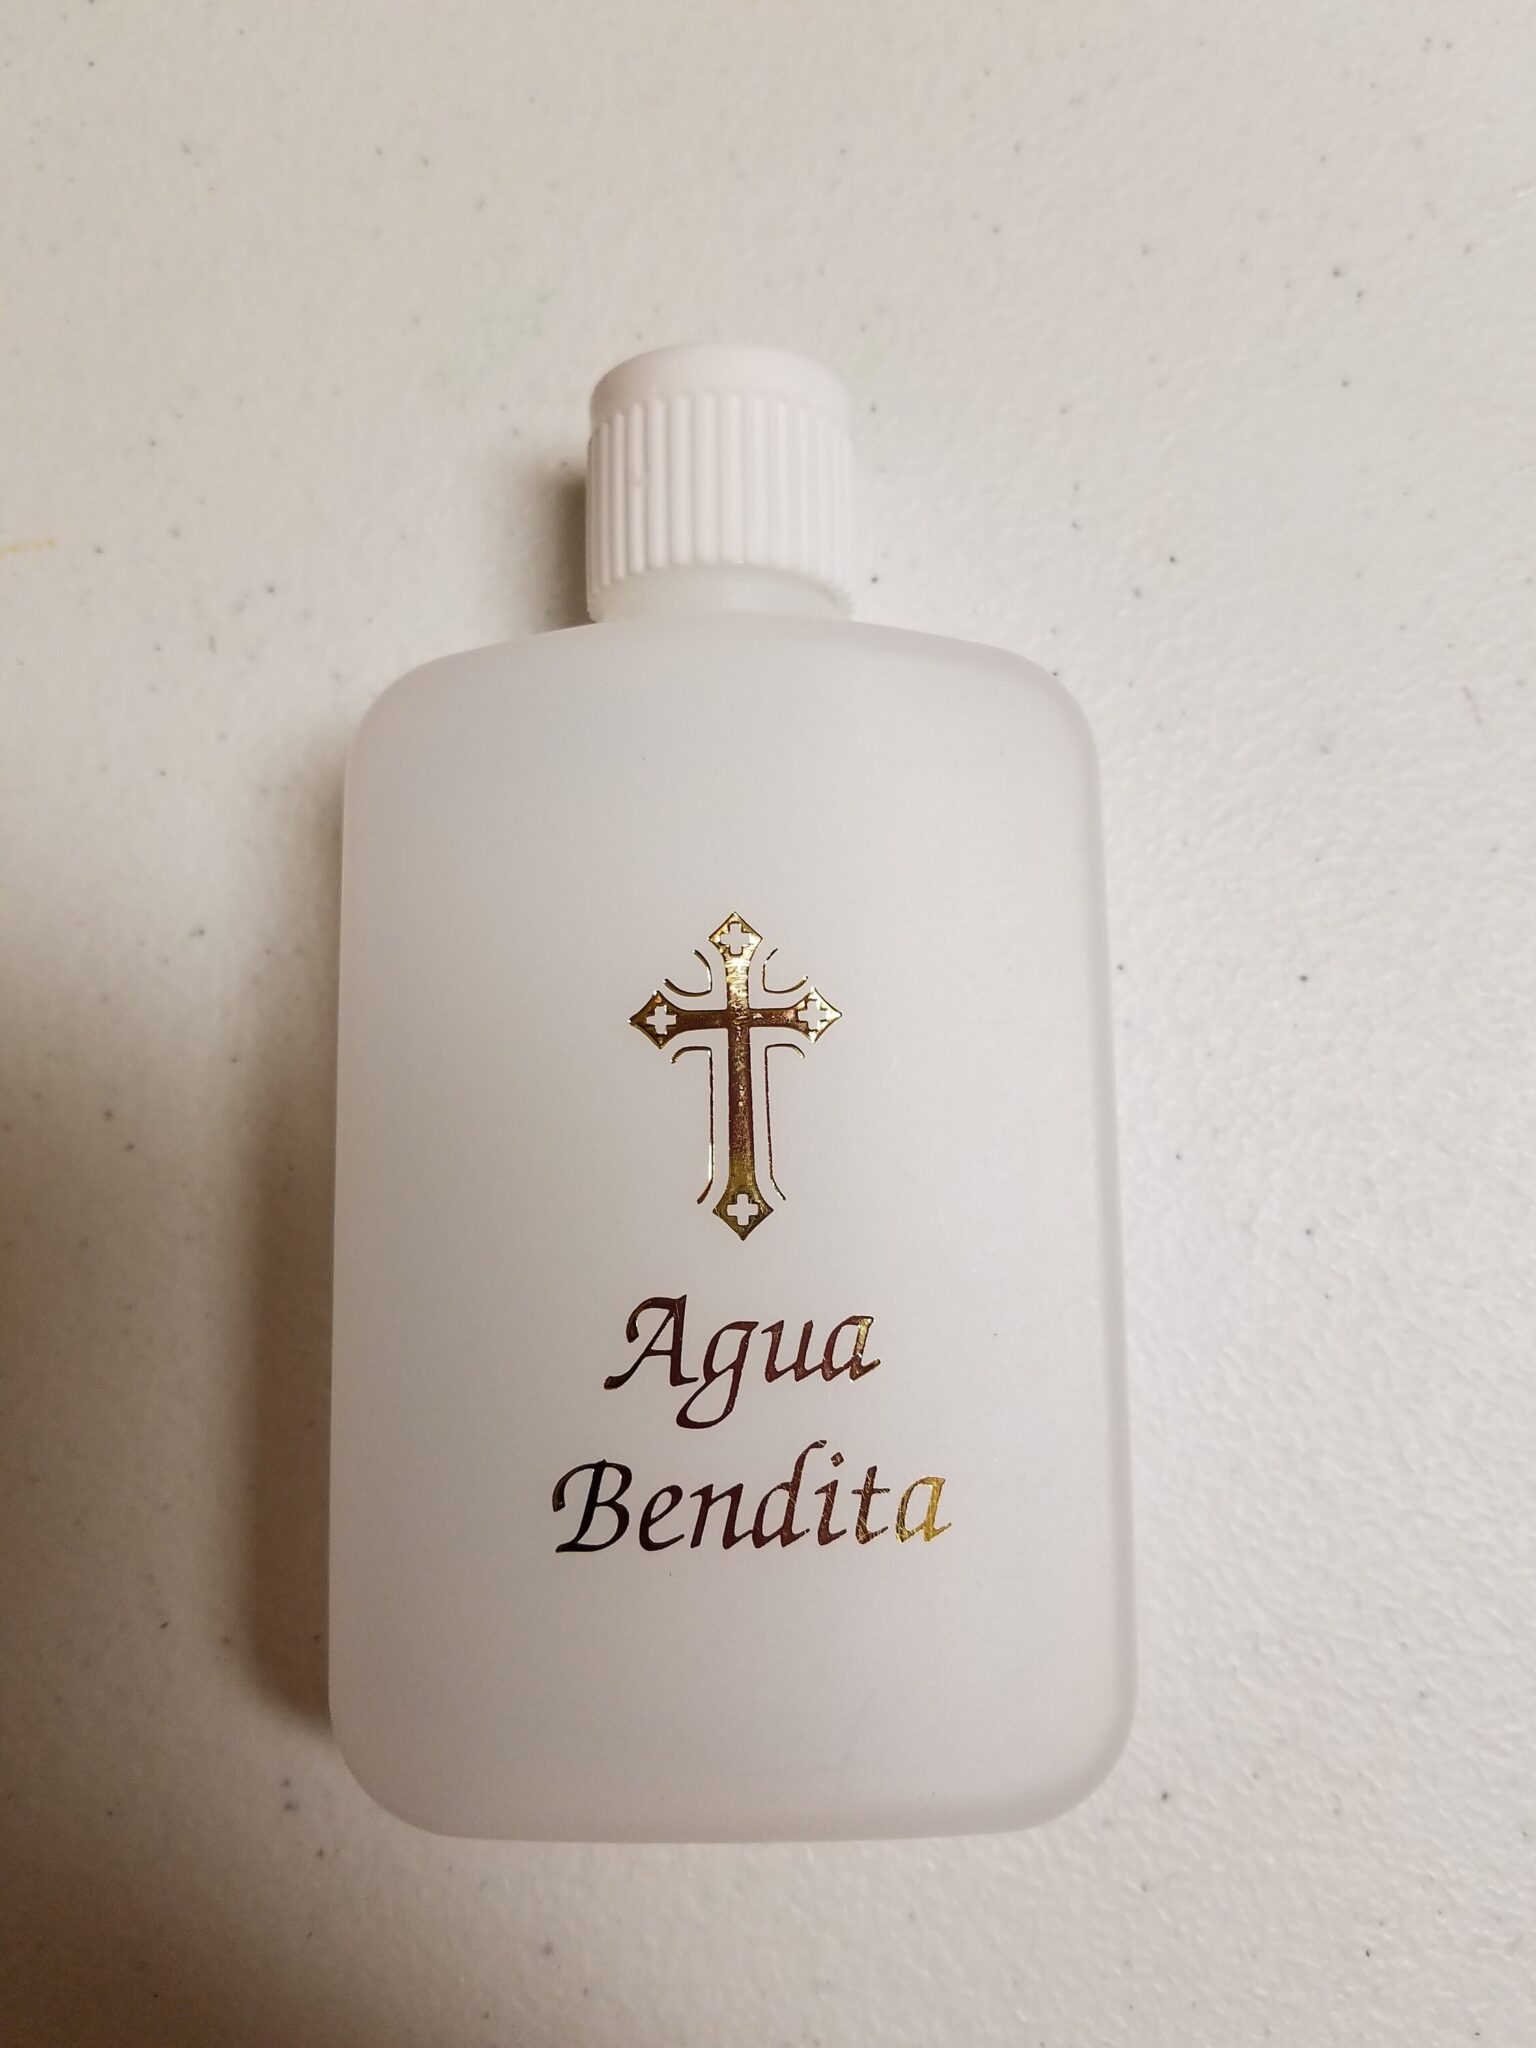 Botellas para agua bendita: un símbolo de la espiritualidad